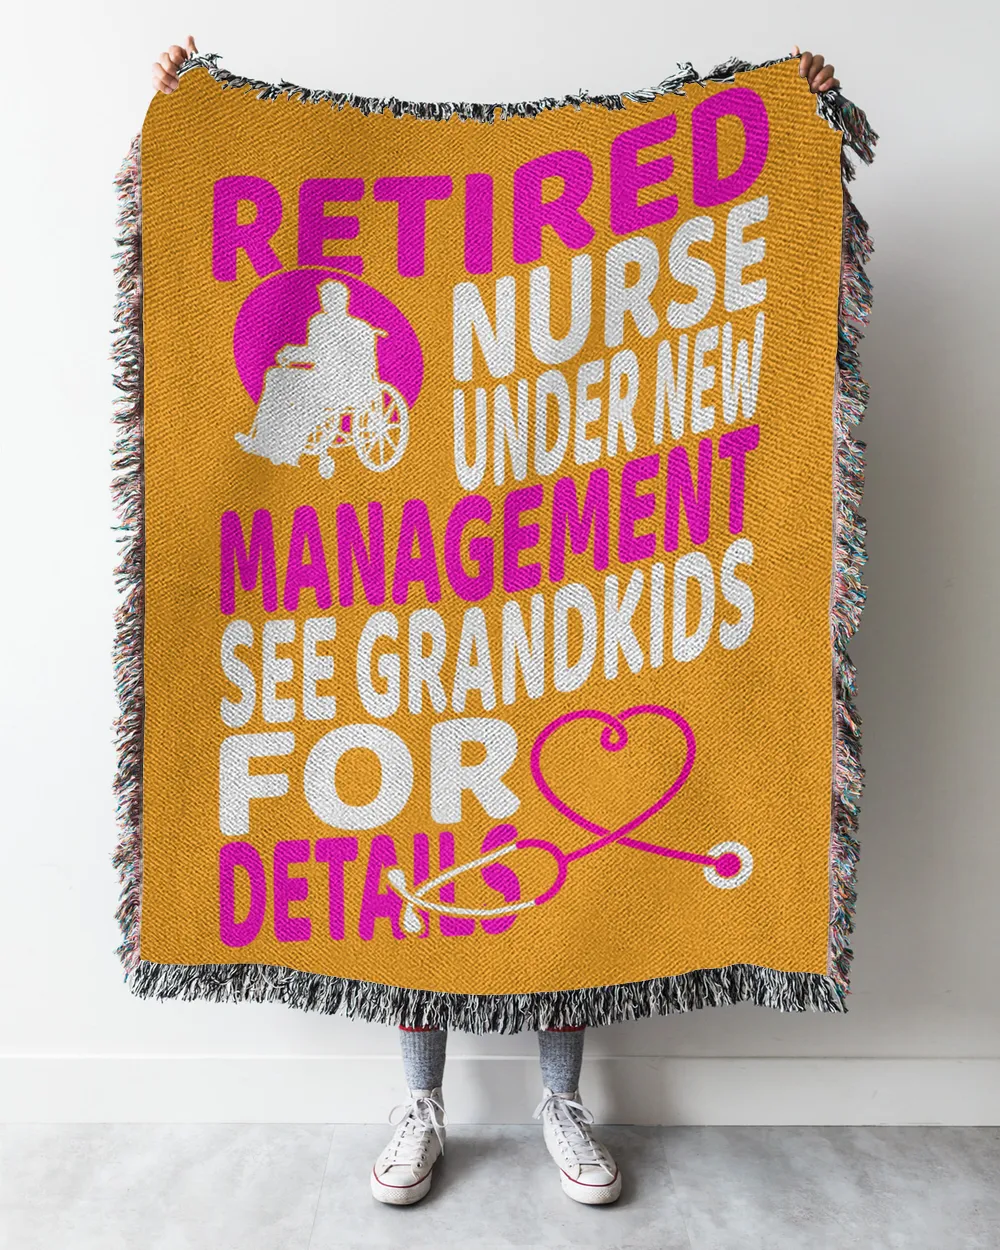 Nurse Day Retired Nurse Under New Management See Grandkids For Details